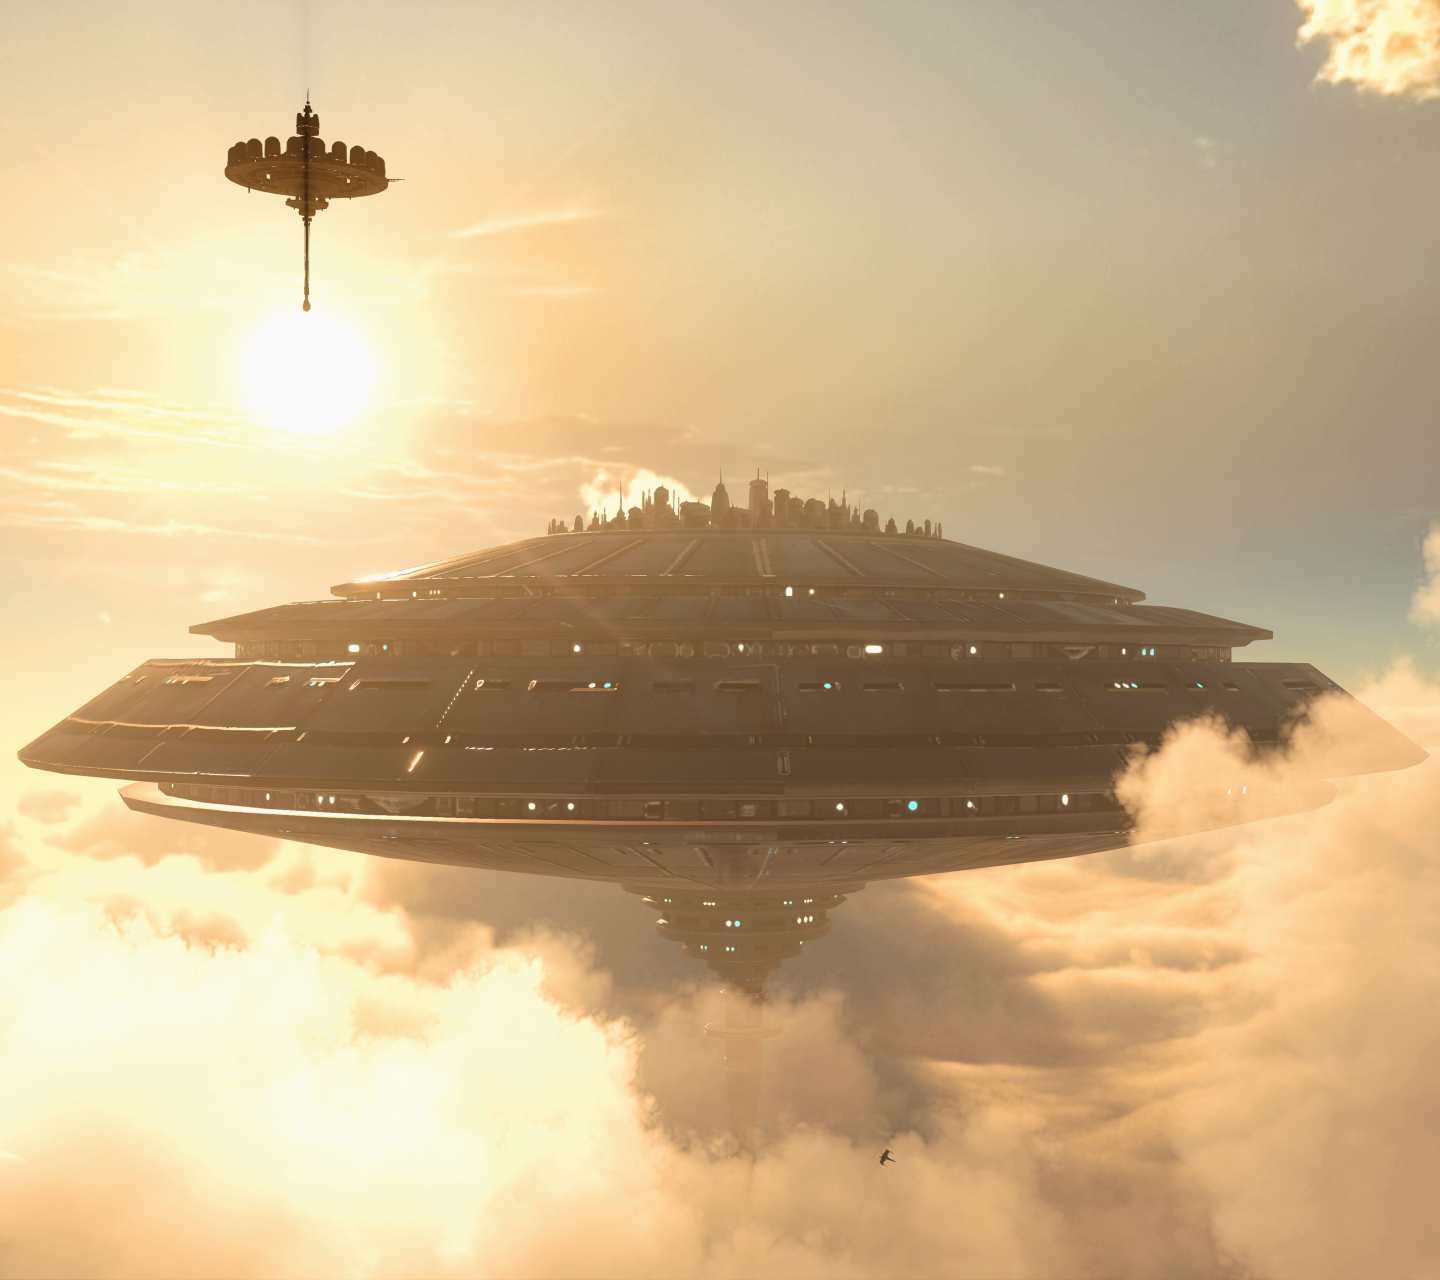 Descarga gratuita de fondo de pantalla para móvil de Videojuego, La Guerra De Las Galaxias, Frente De Batalla De Star Wars (2015).